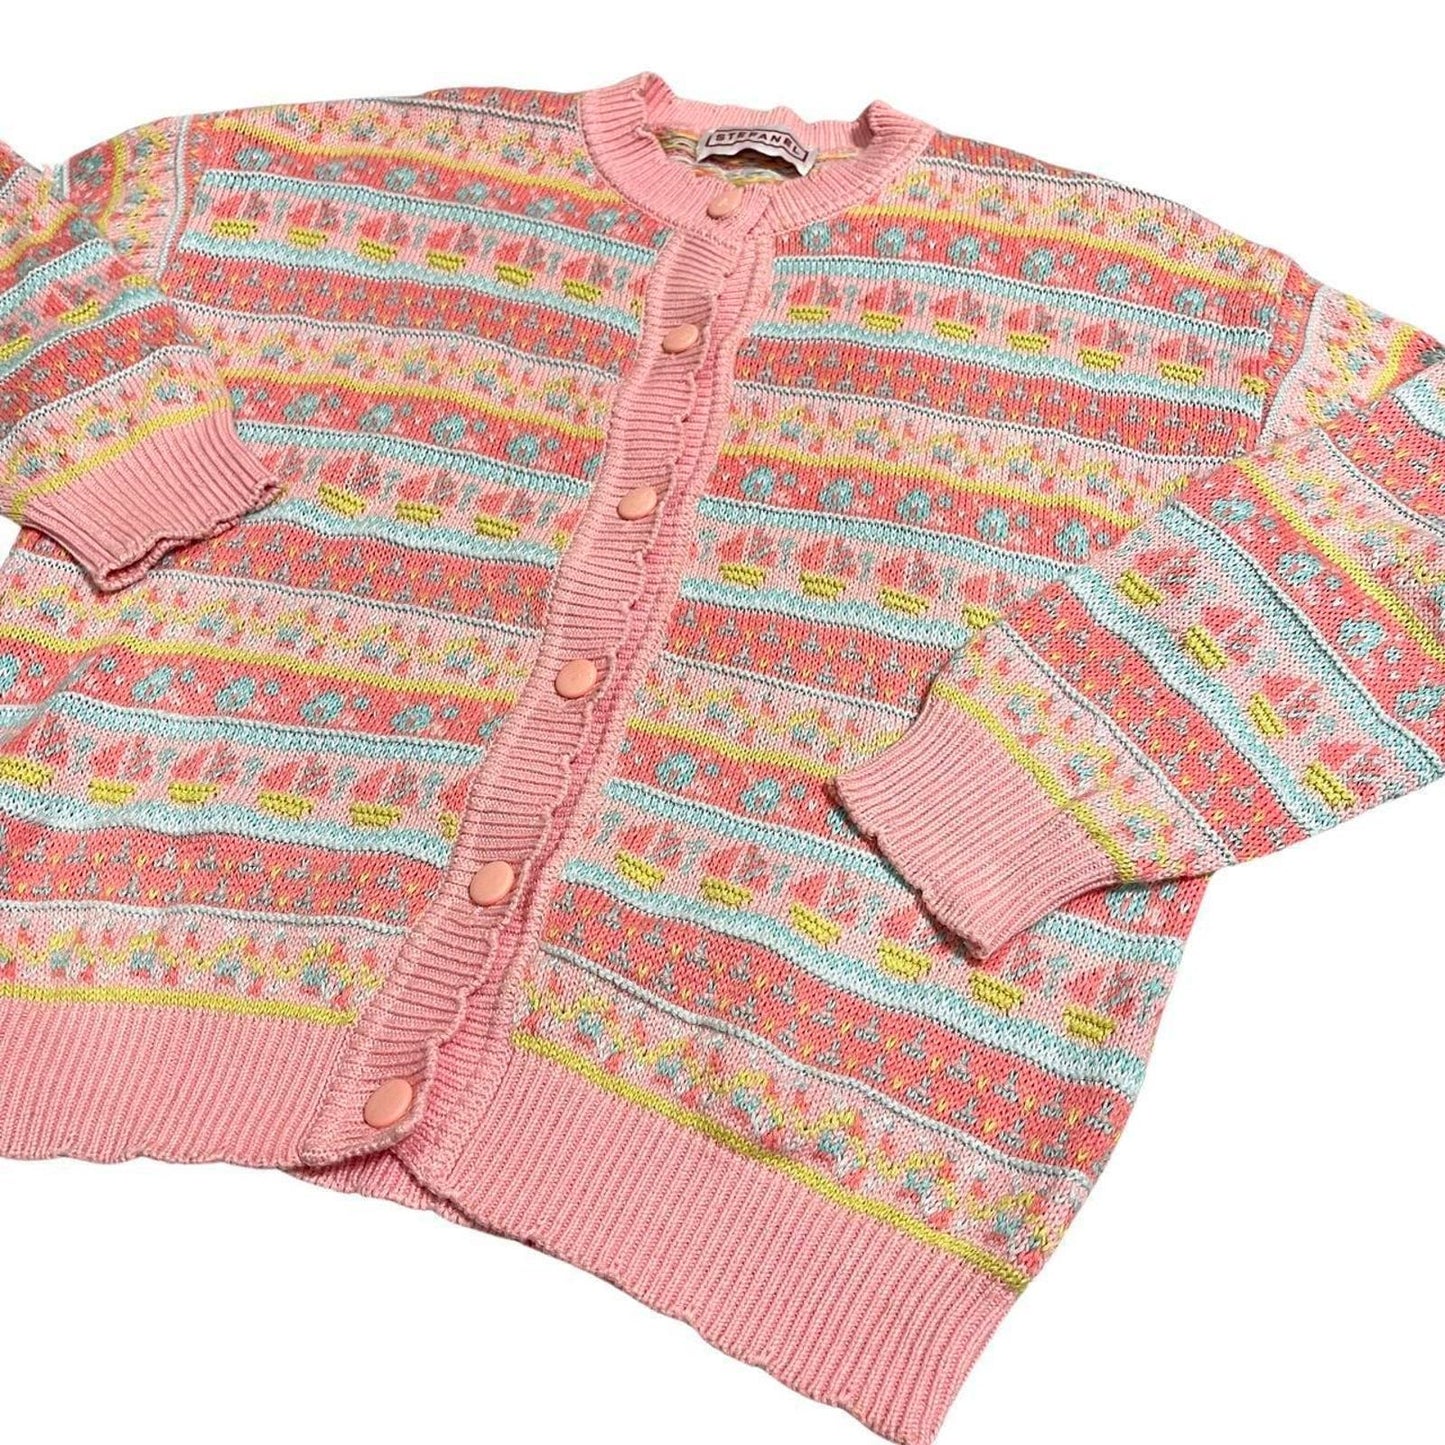 Vintage Pastel Pink Knit Cardigan (XS)